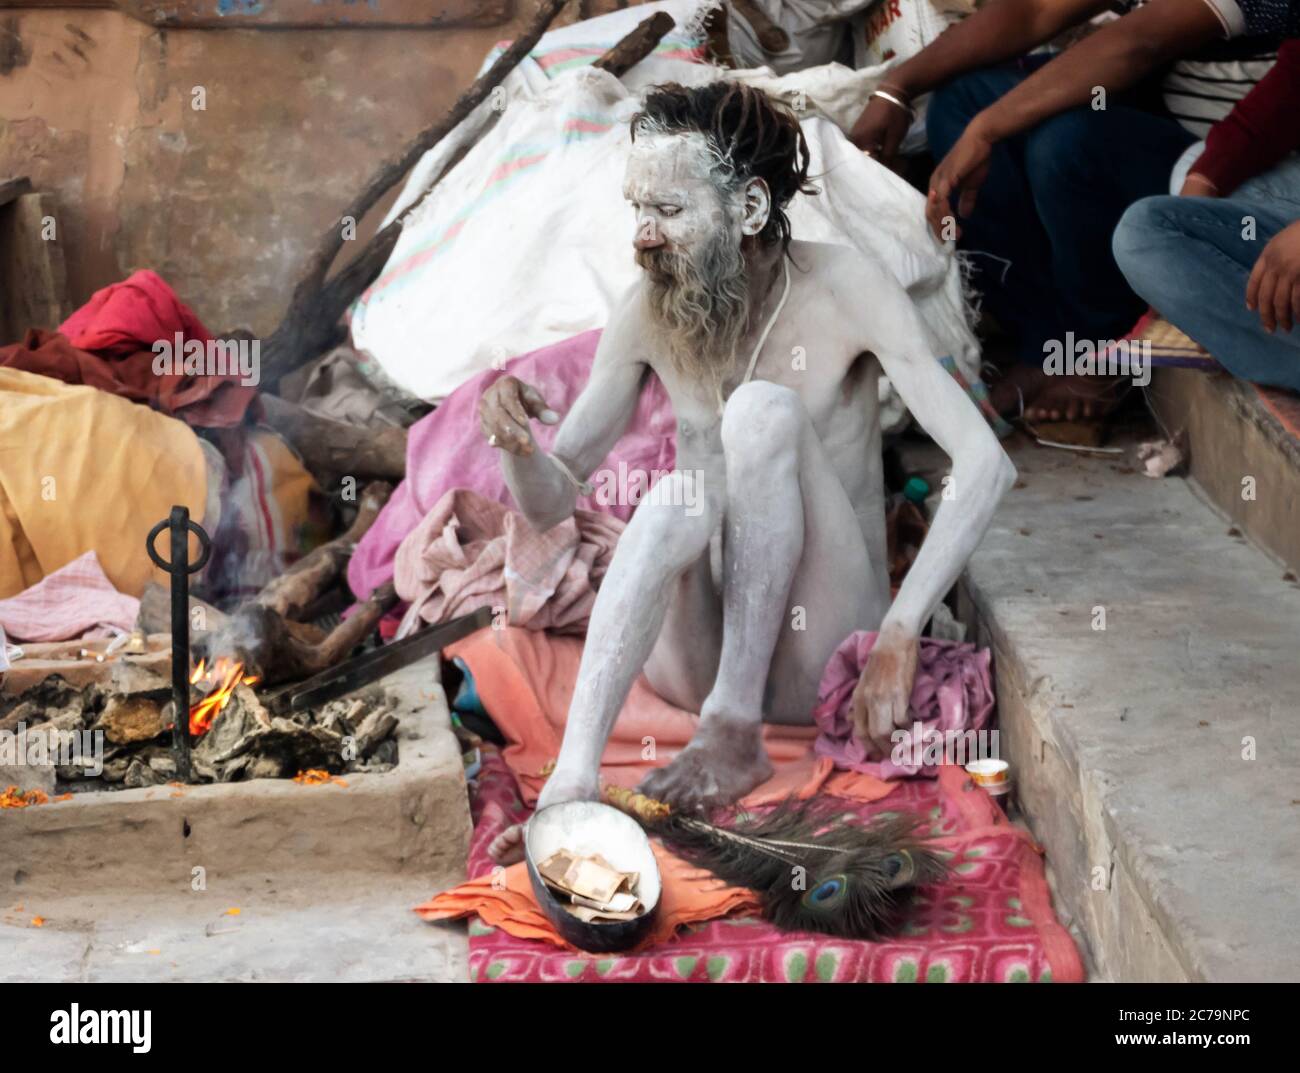 A Naga Sadhu sits in front of his tent at the Varanasi ghats Stock Photo